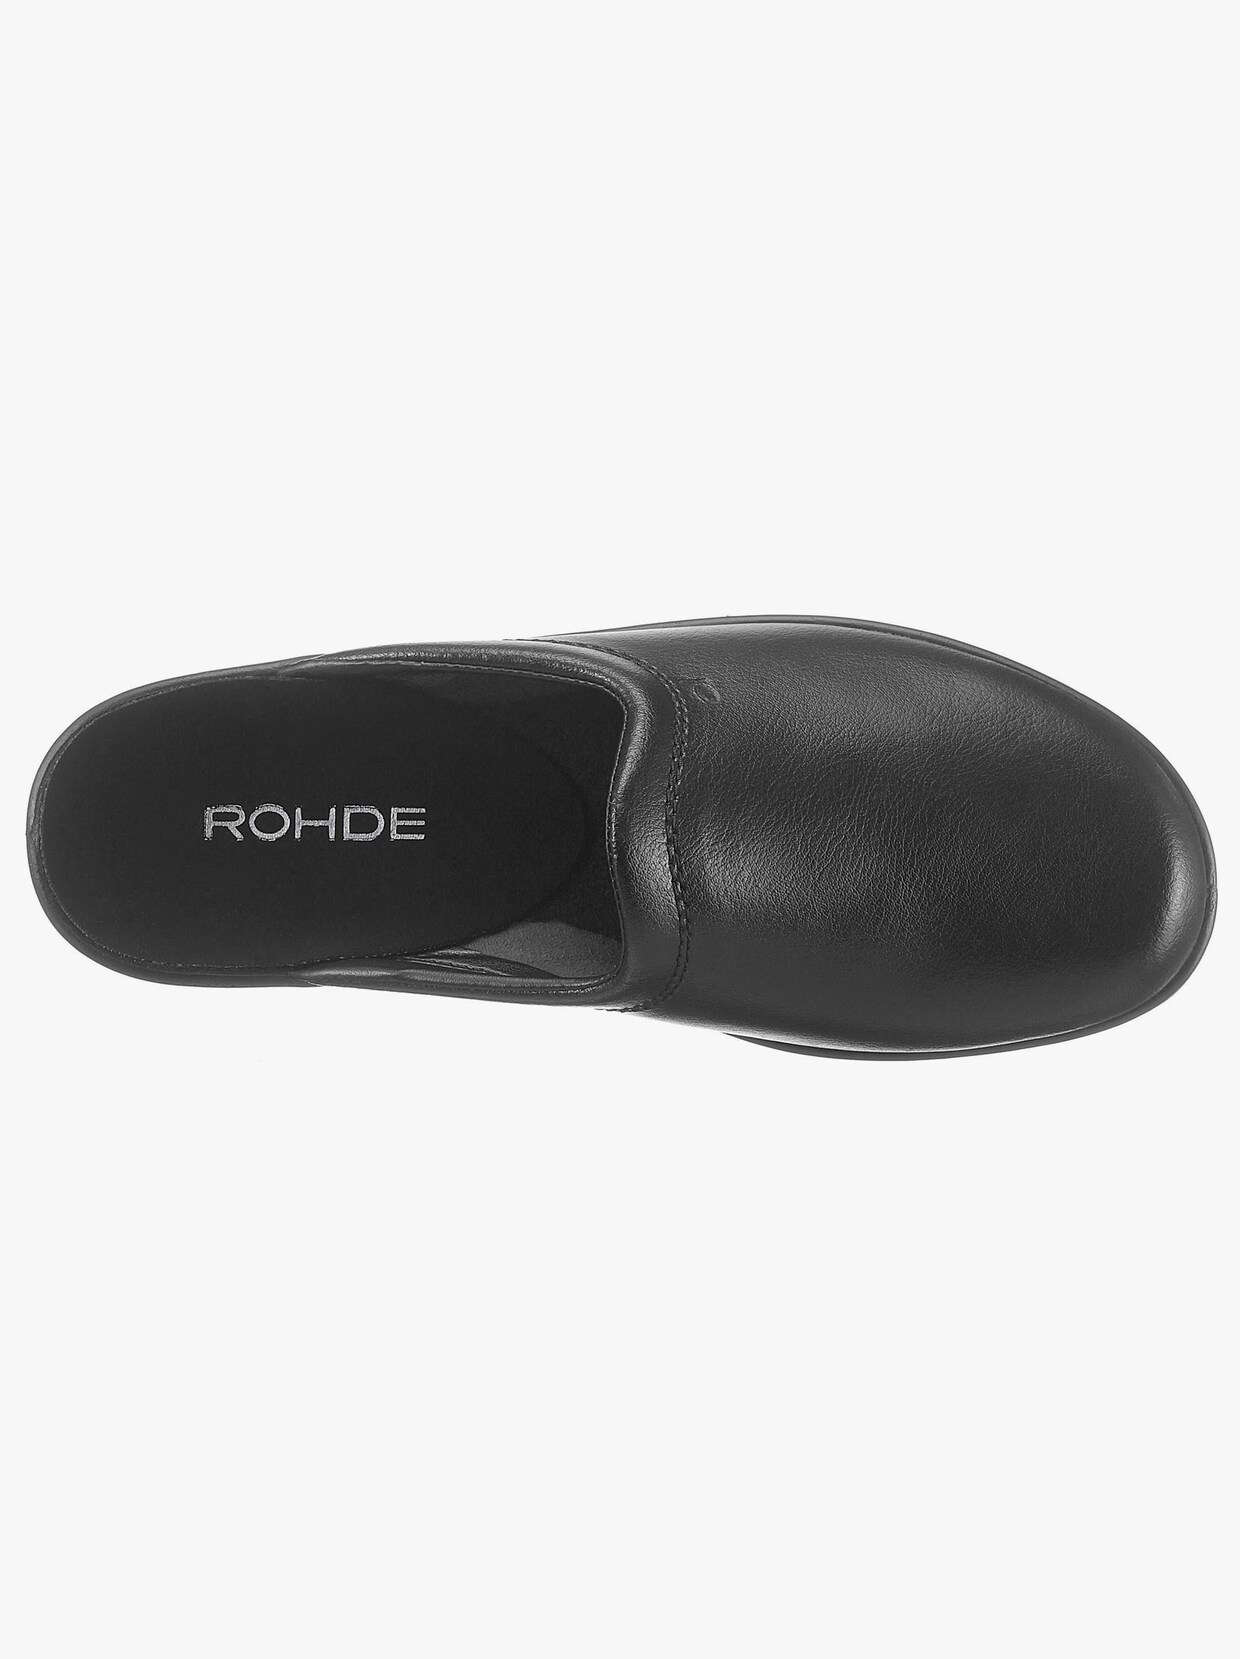 Rohde Pantoffel - schwarz